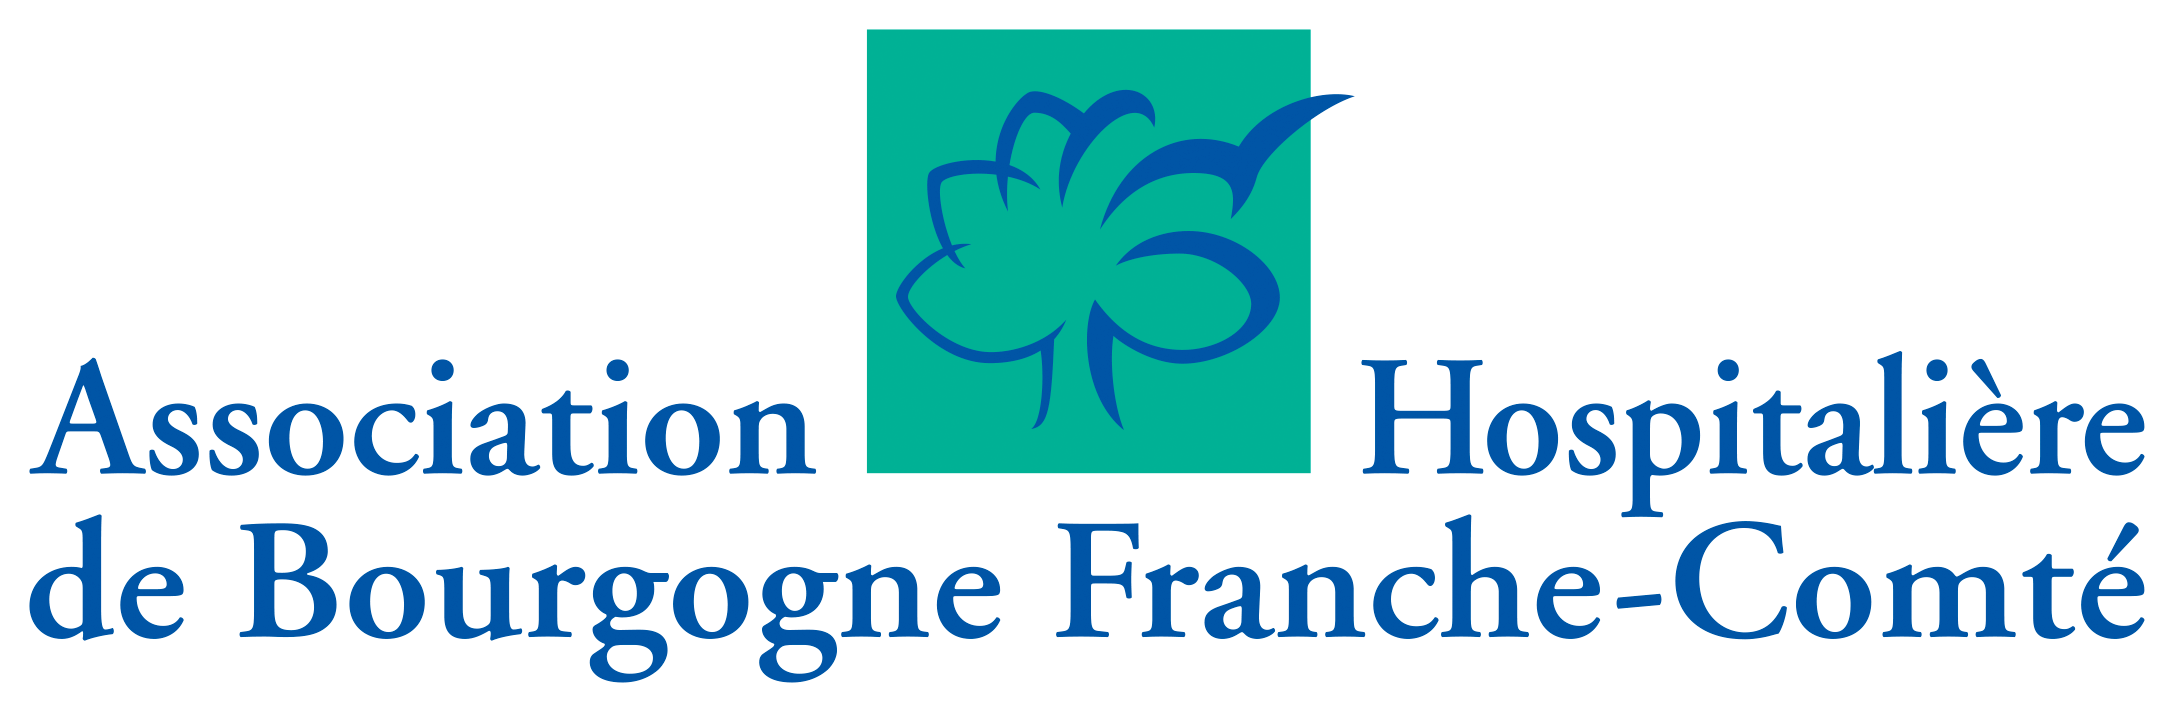 ASSOCIATION HOSPITALIERE DE BOURGOGNE FRANCHE-COMTE